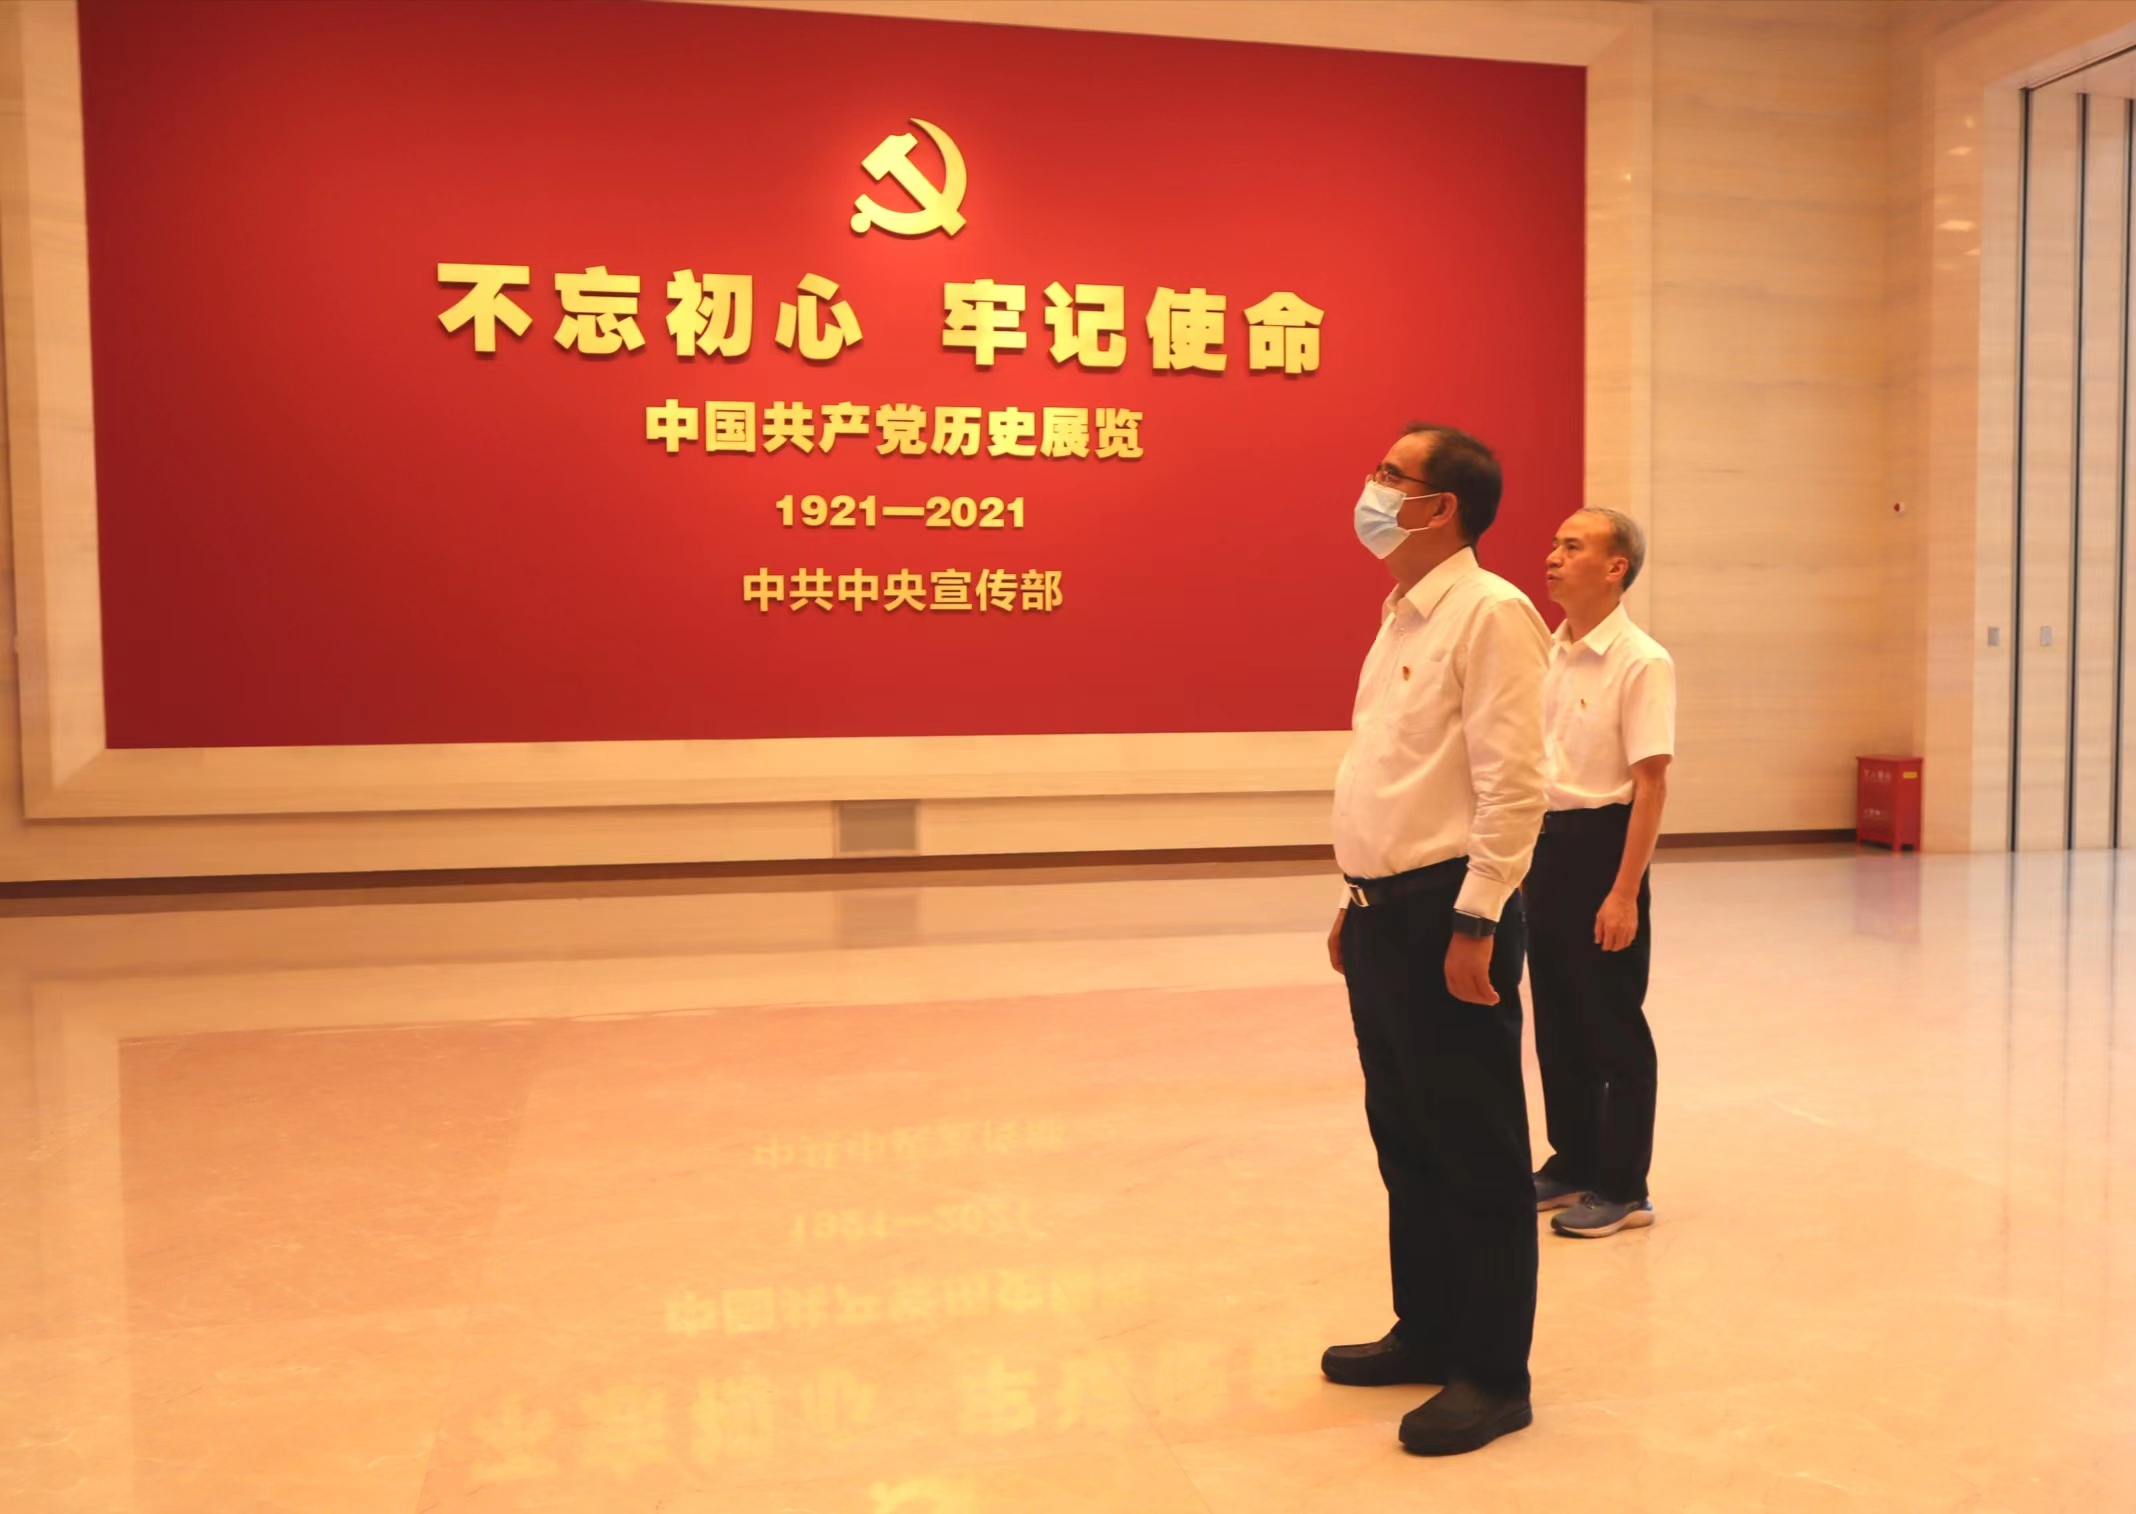 赴中国共产党历史展览馆开展主题党日活动之一.jpg